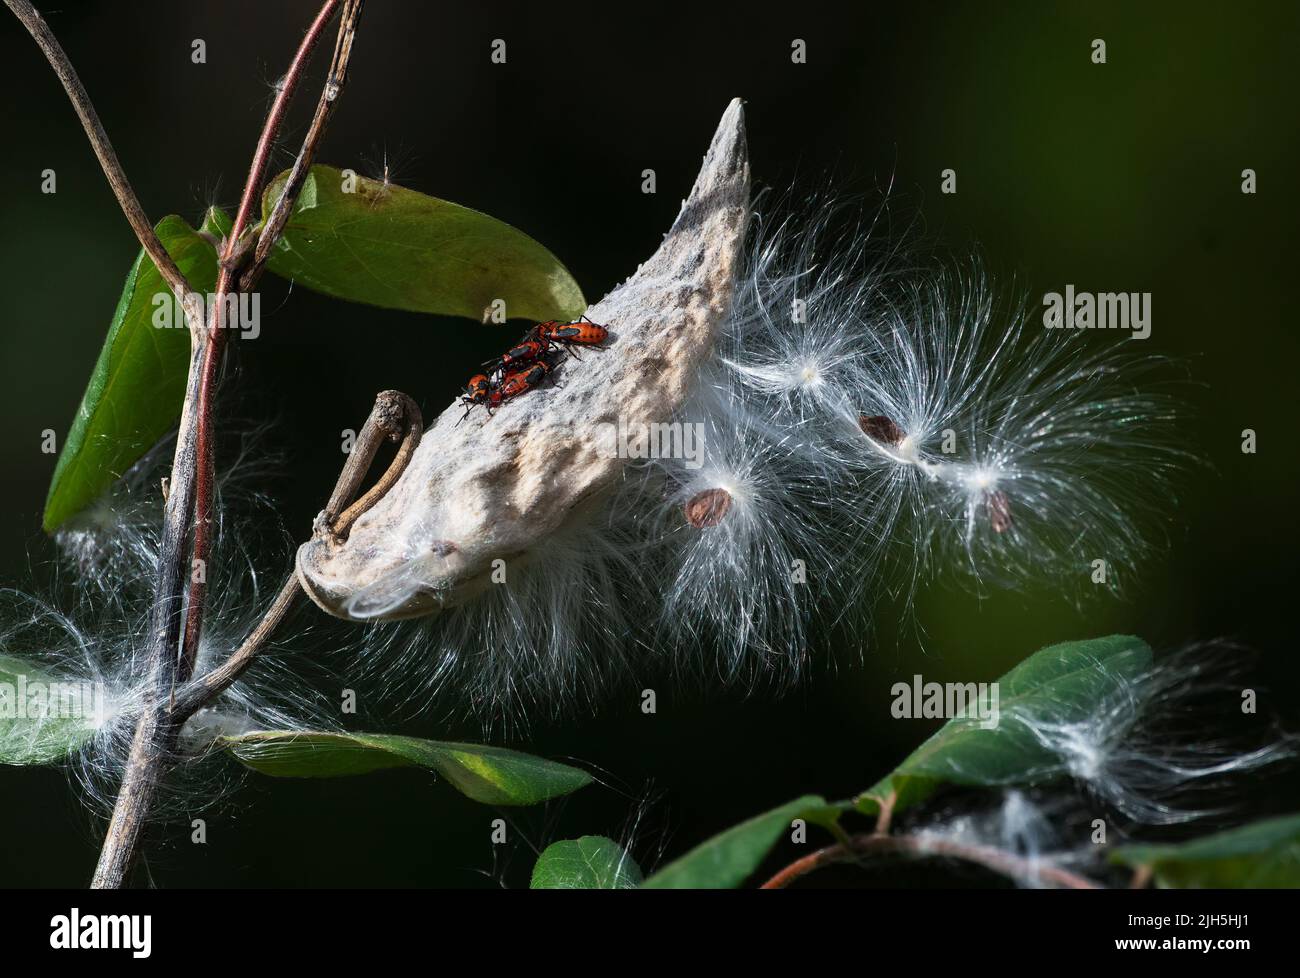 Common milkweed seedpod and seeds Stock Photo